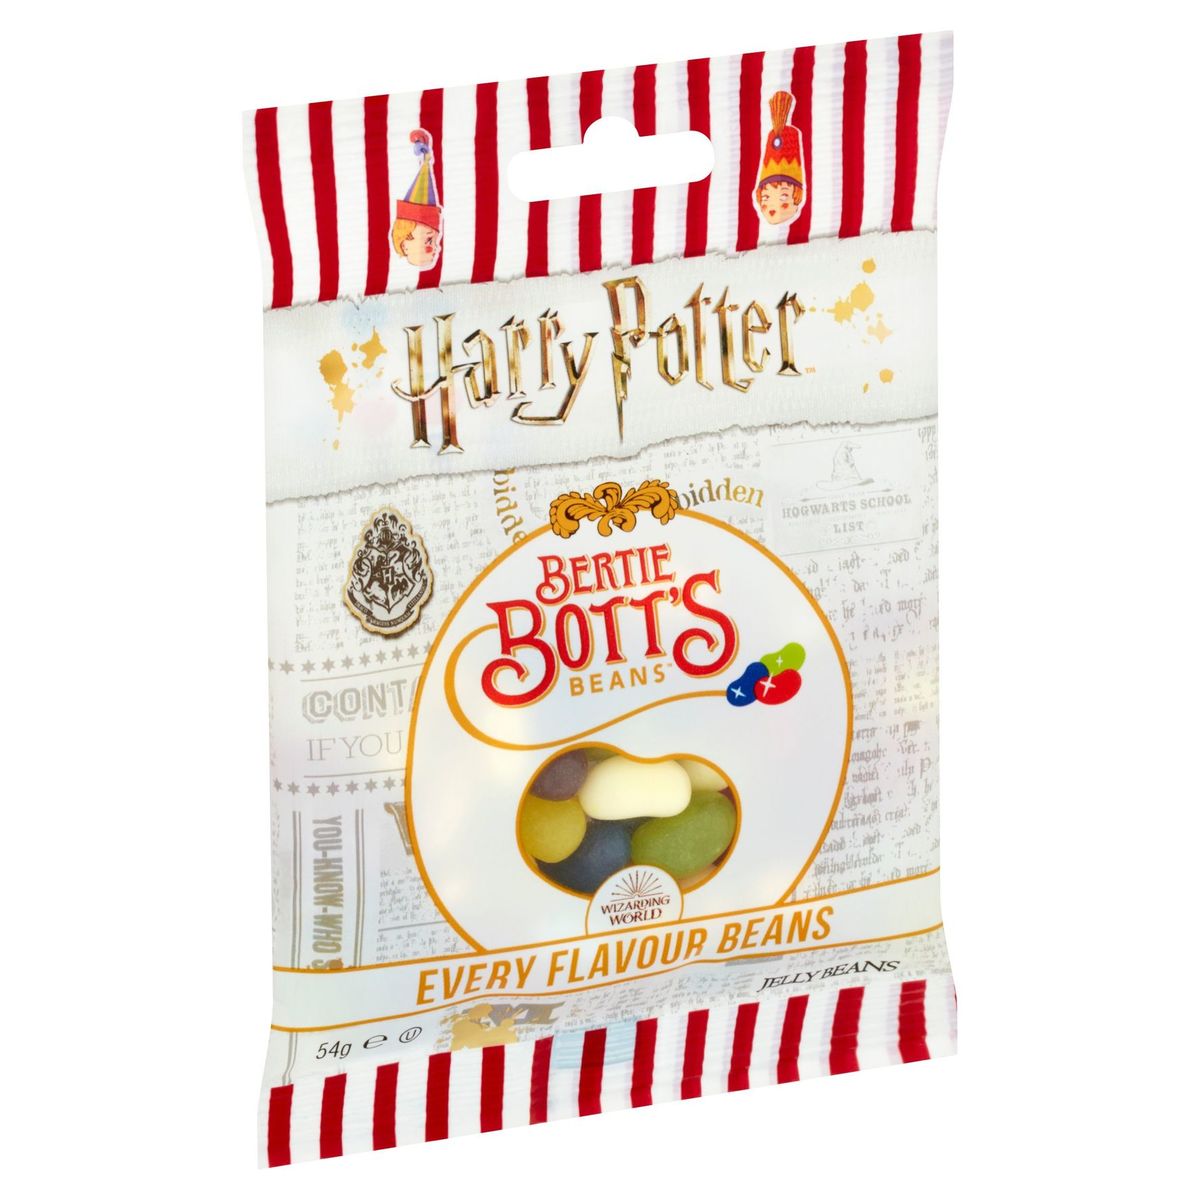 Harry Potter Bertie Bott's Beans Jelly Beans 54 g